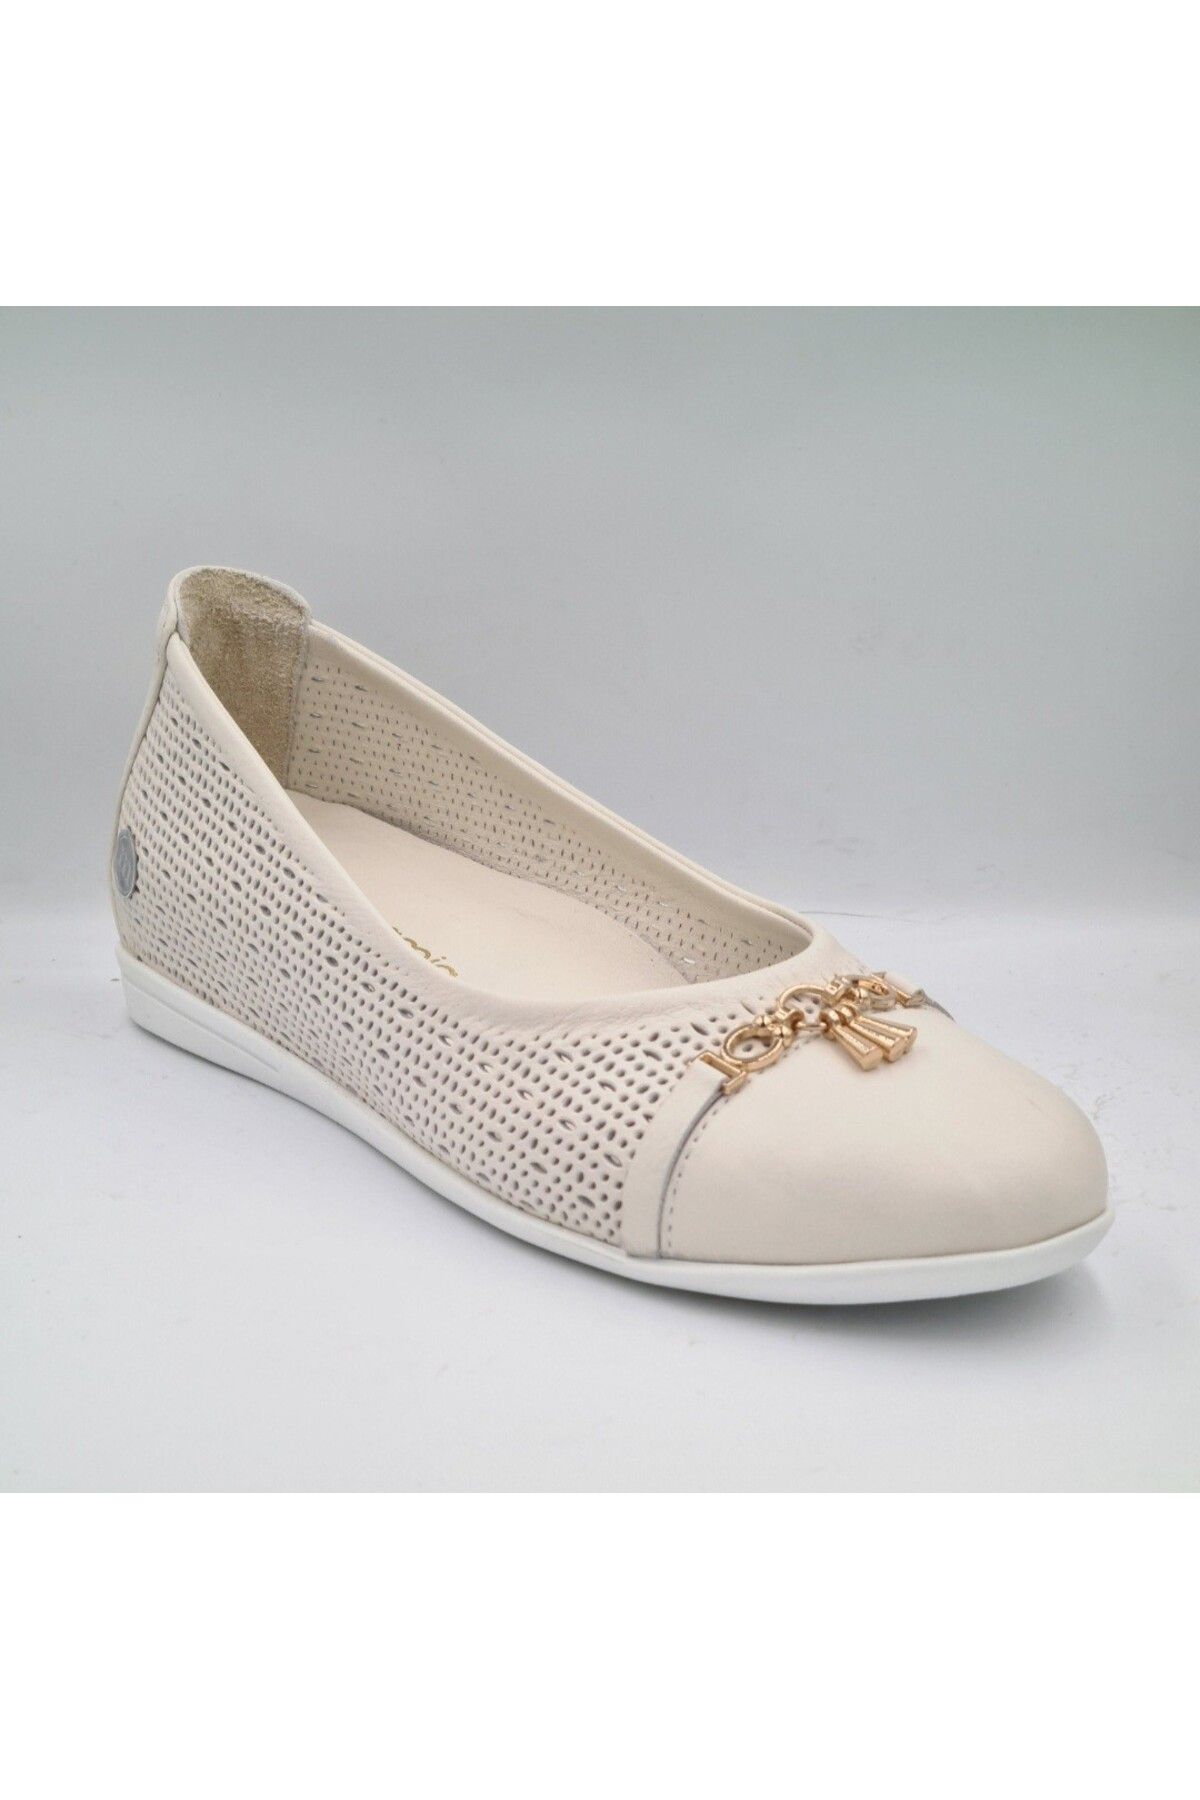 Mammamia D24YA-475 Kemik Crema Hakiki Deri Deri Gizli Dolgu (4cm) Kadın Günlük Ayakkabı